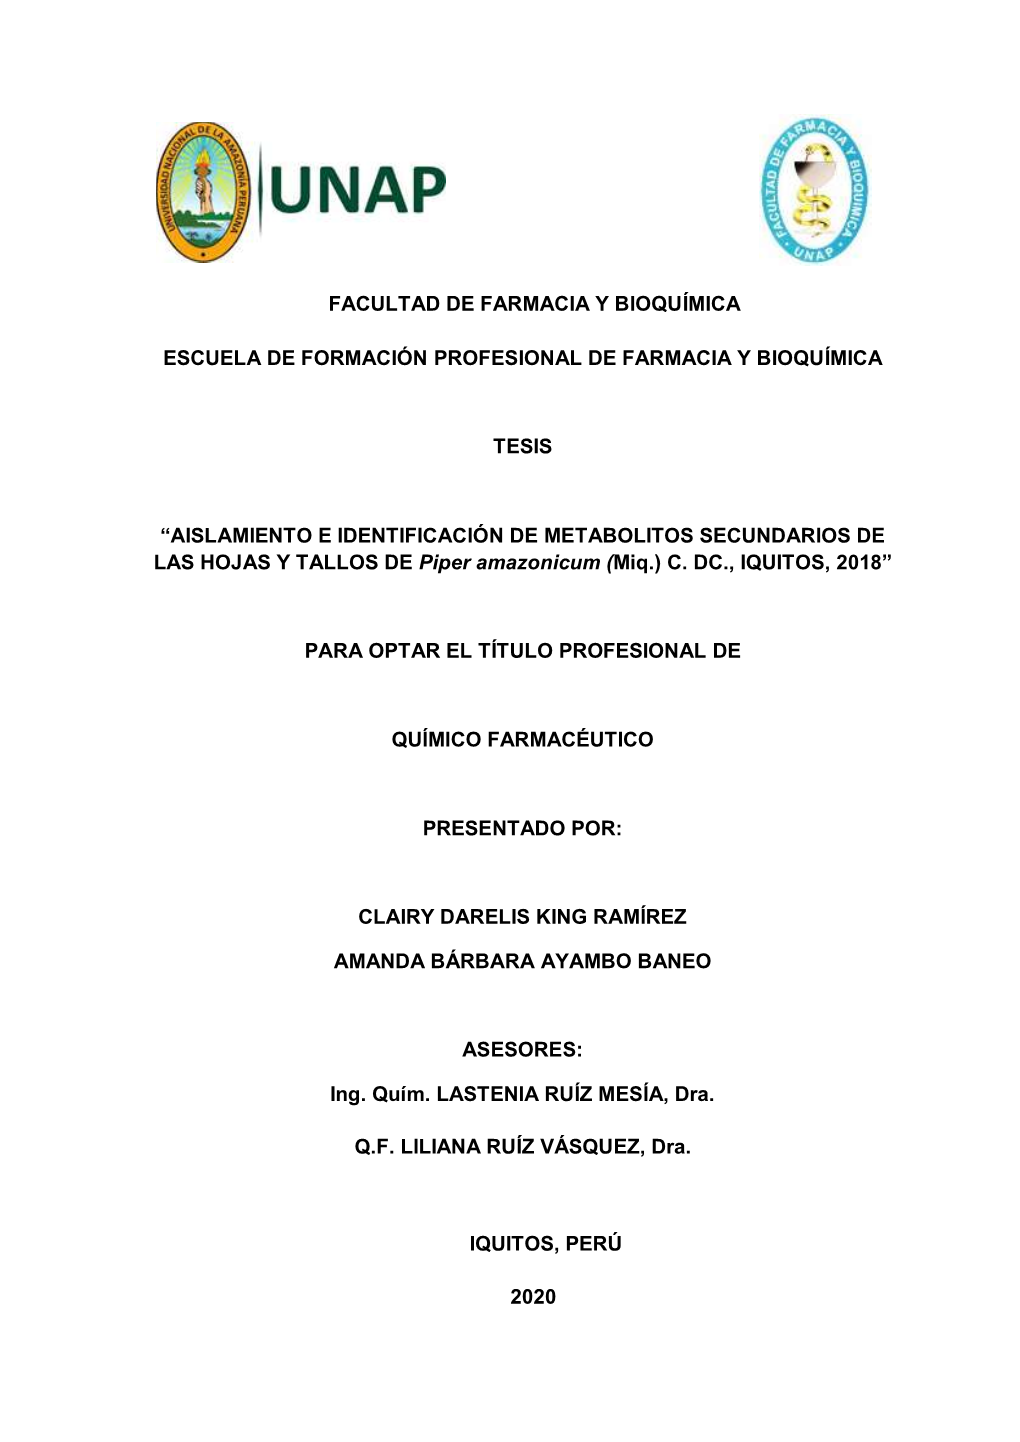 AISLAMIENTO E IDENTIFICACIÓN DE METABOLITOS SECUNDARIOS DE LAS HOJAS Y TALLOS DE Piper Amazonicum (Miq.) C